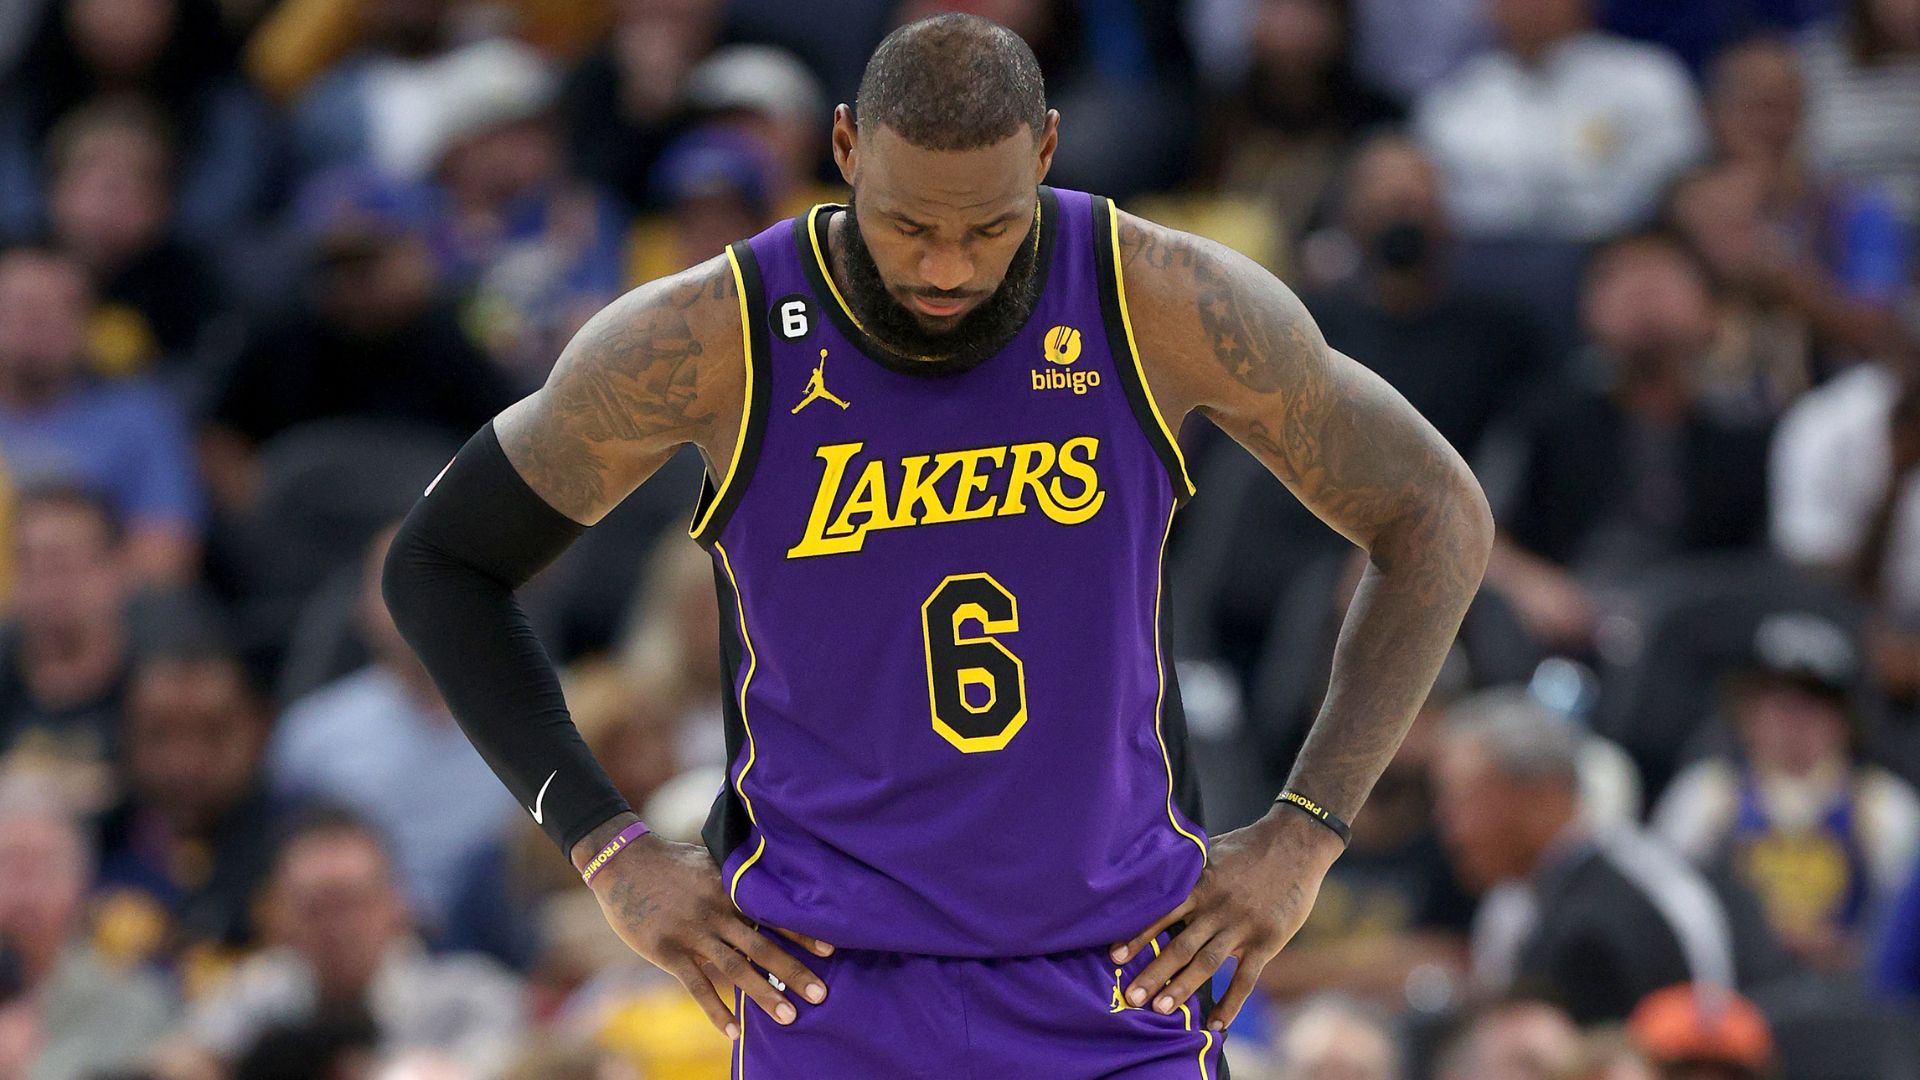 Los Angeles Lakers: elenco, jogadores e salários